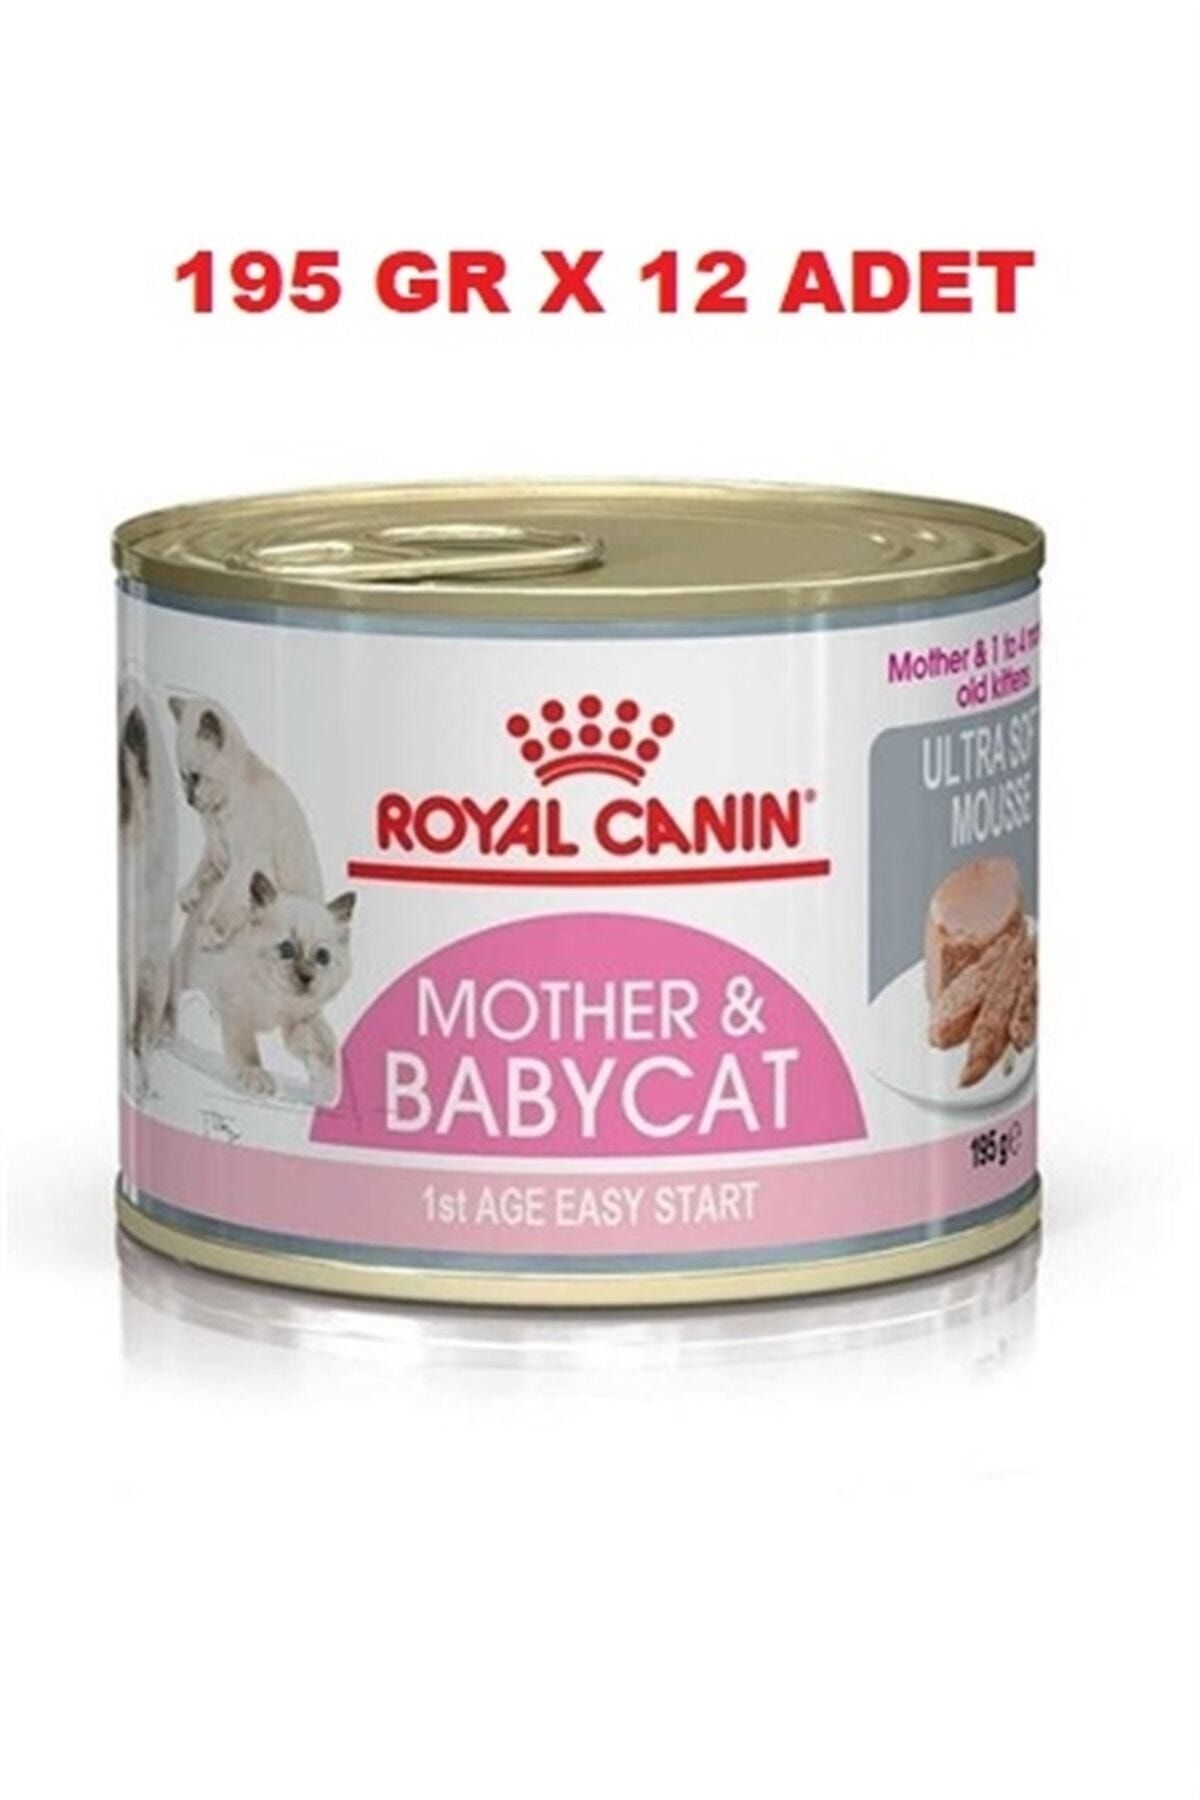 Royal Canin Mother Babycat Konserve 195 Gr X 12